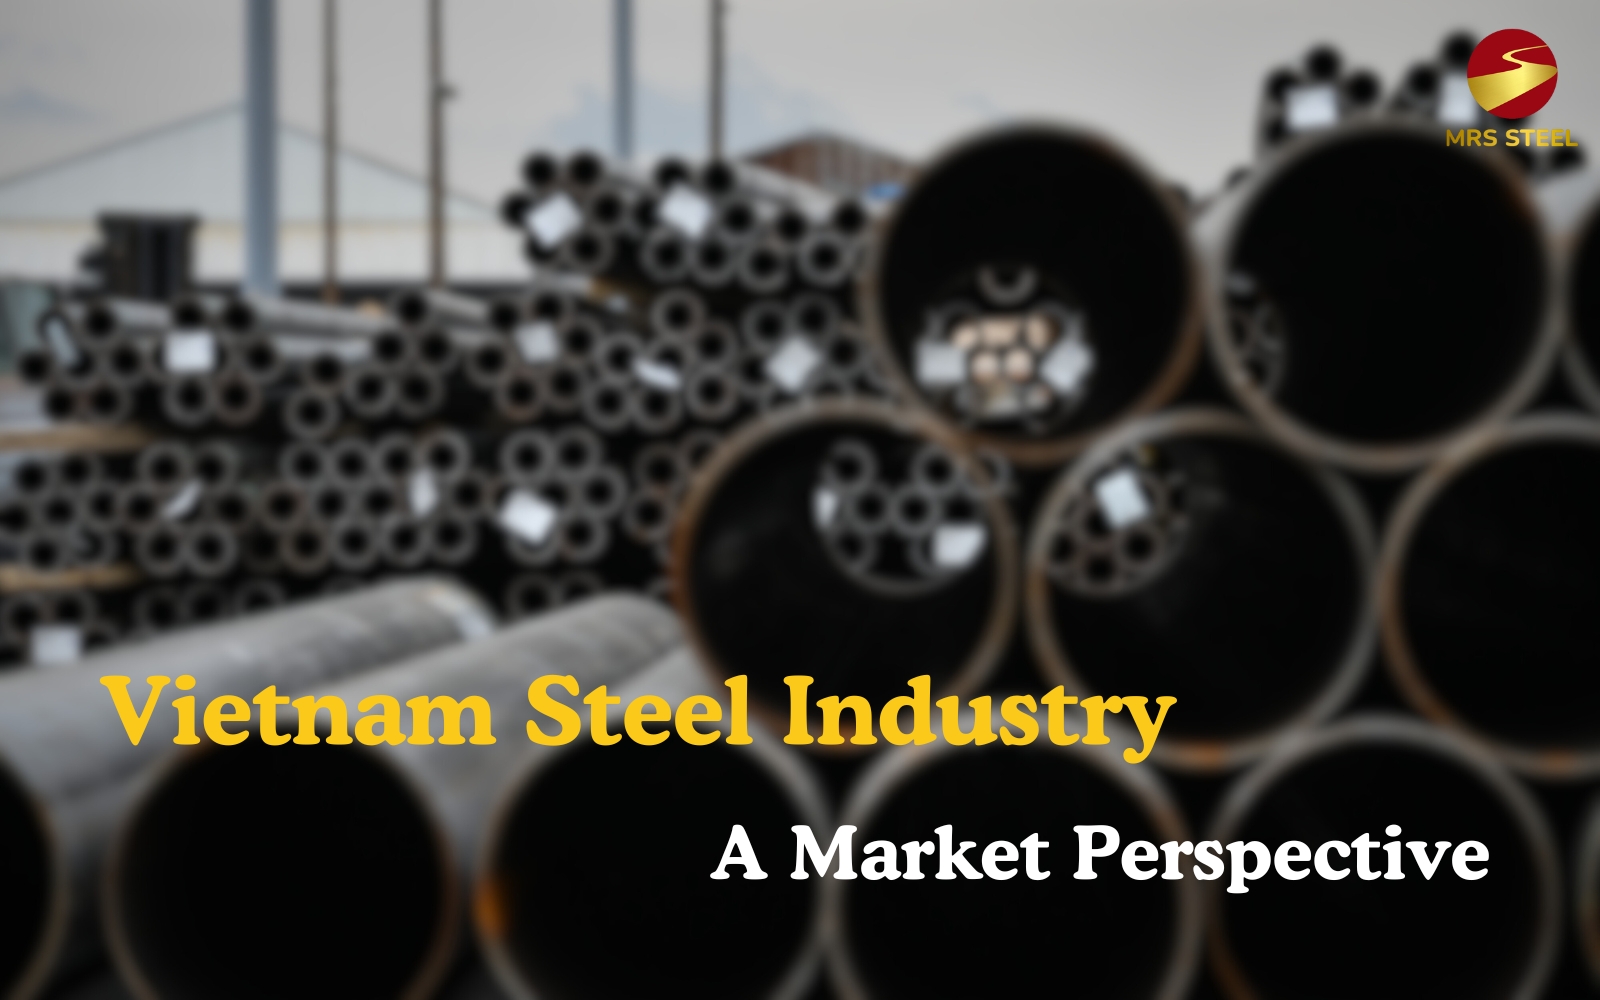 Vietnam Steel Industry: A Market Perspective